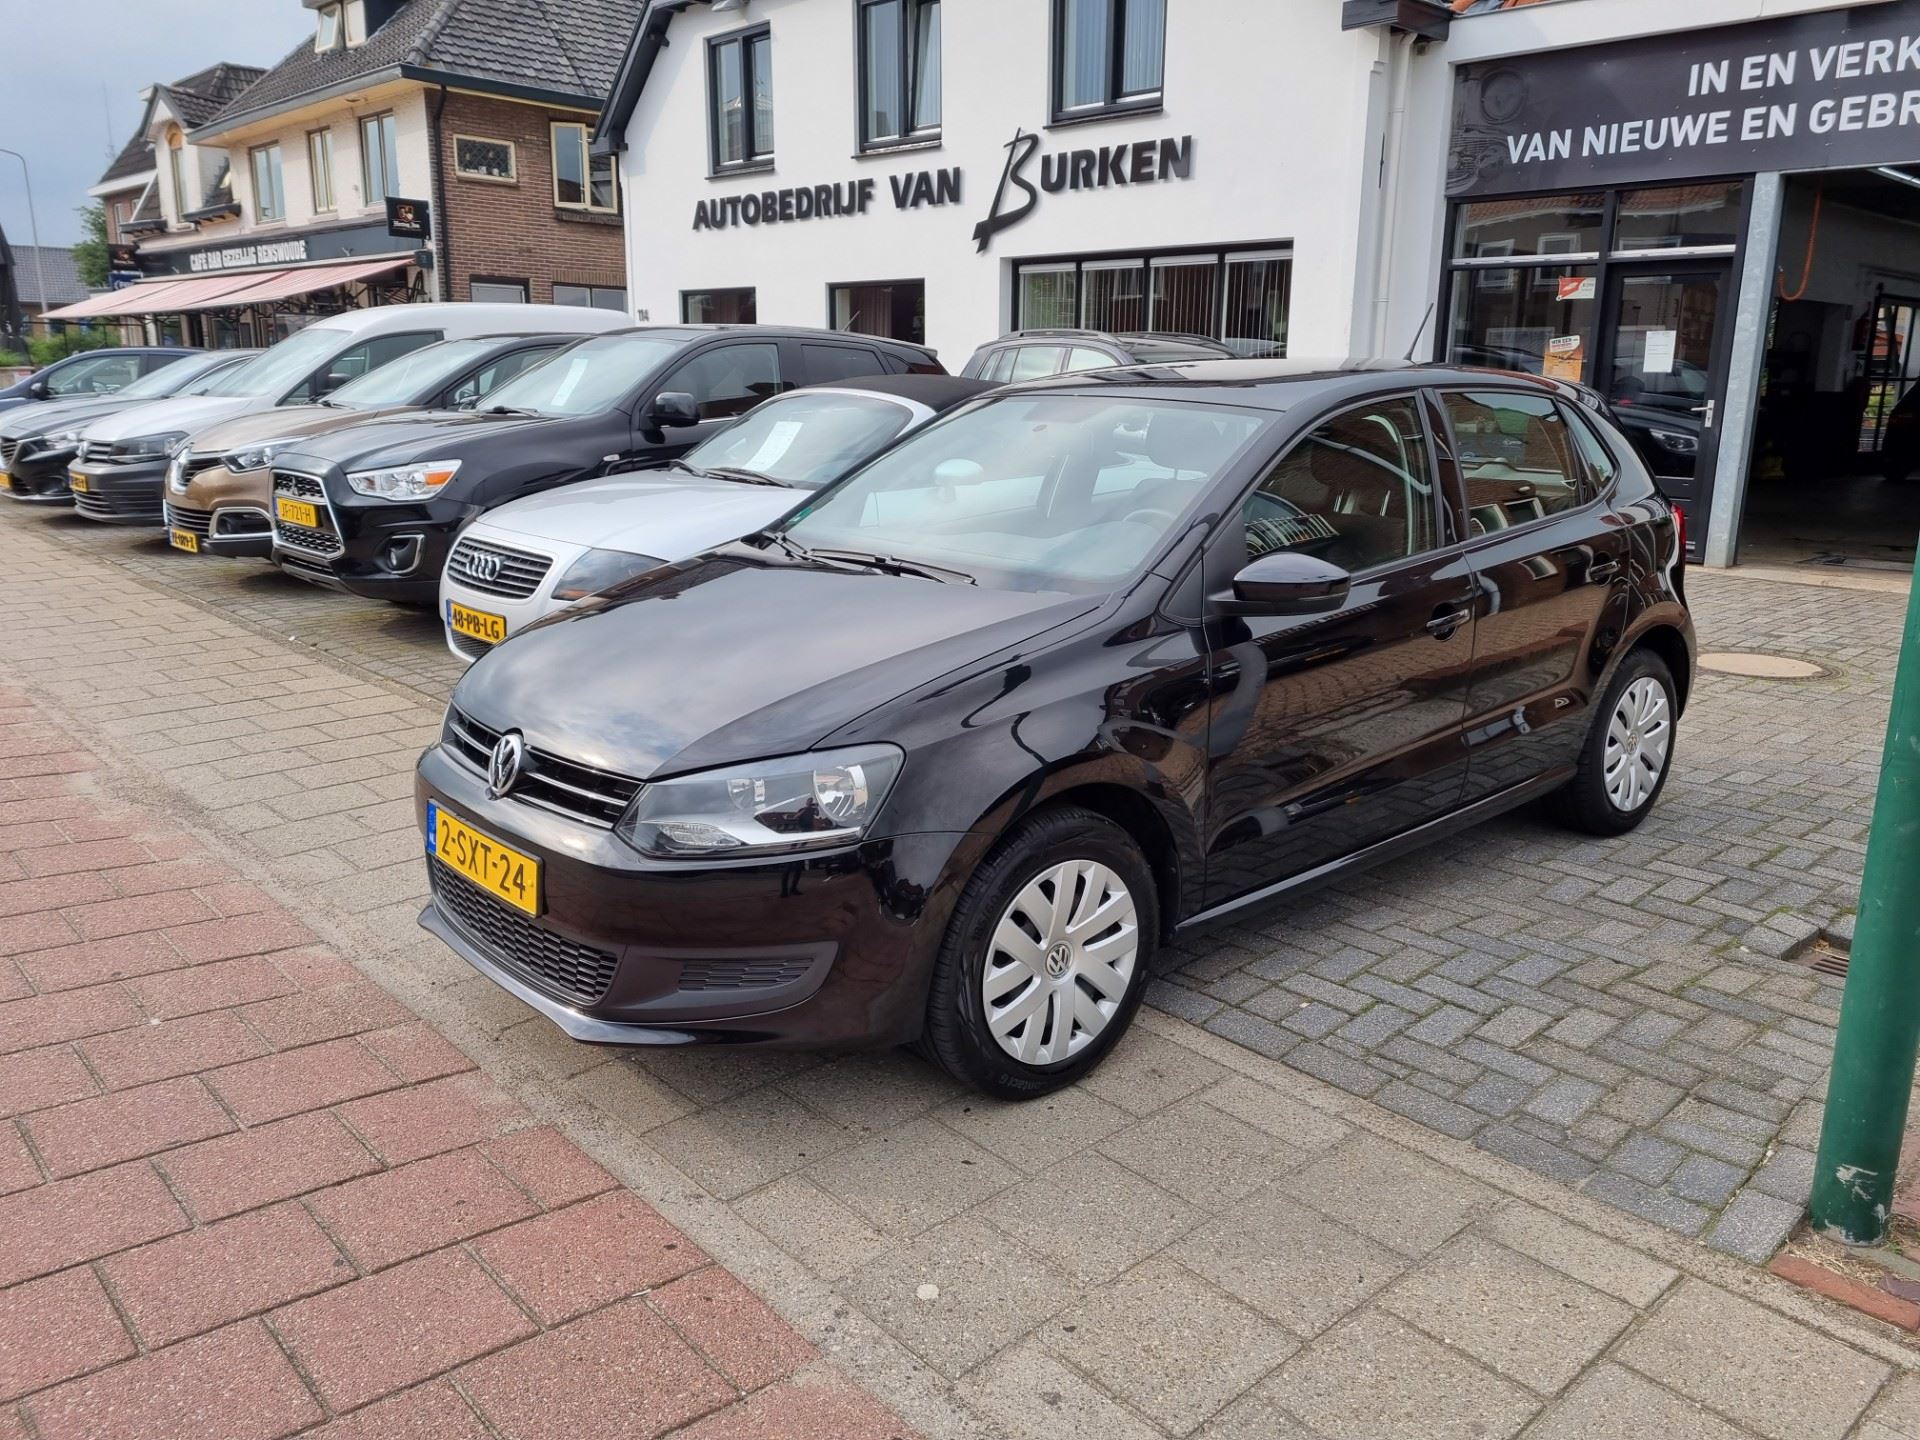 Volkswagen Polo - 1.2 TSI Edition, Trekhaak,Airco,Start/ stop systeem,1ste eigenaar Benzine uit 2014 - www.vanburken.nl